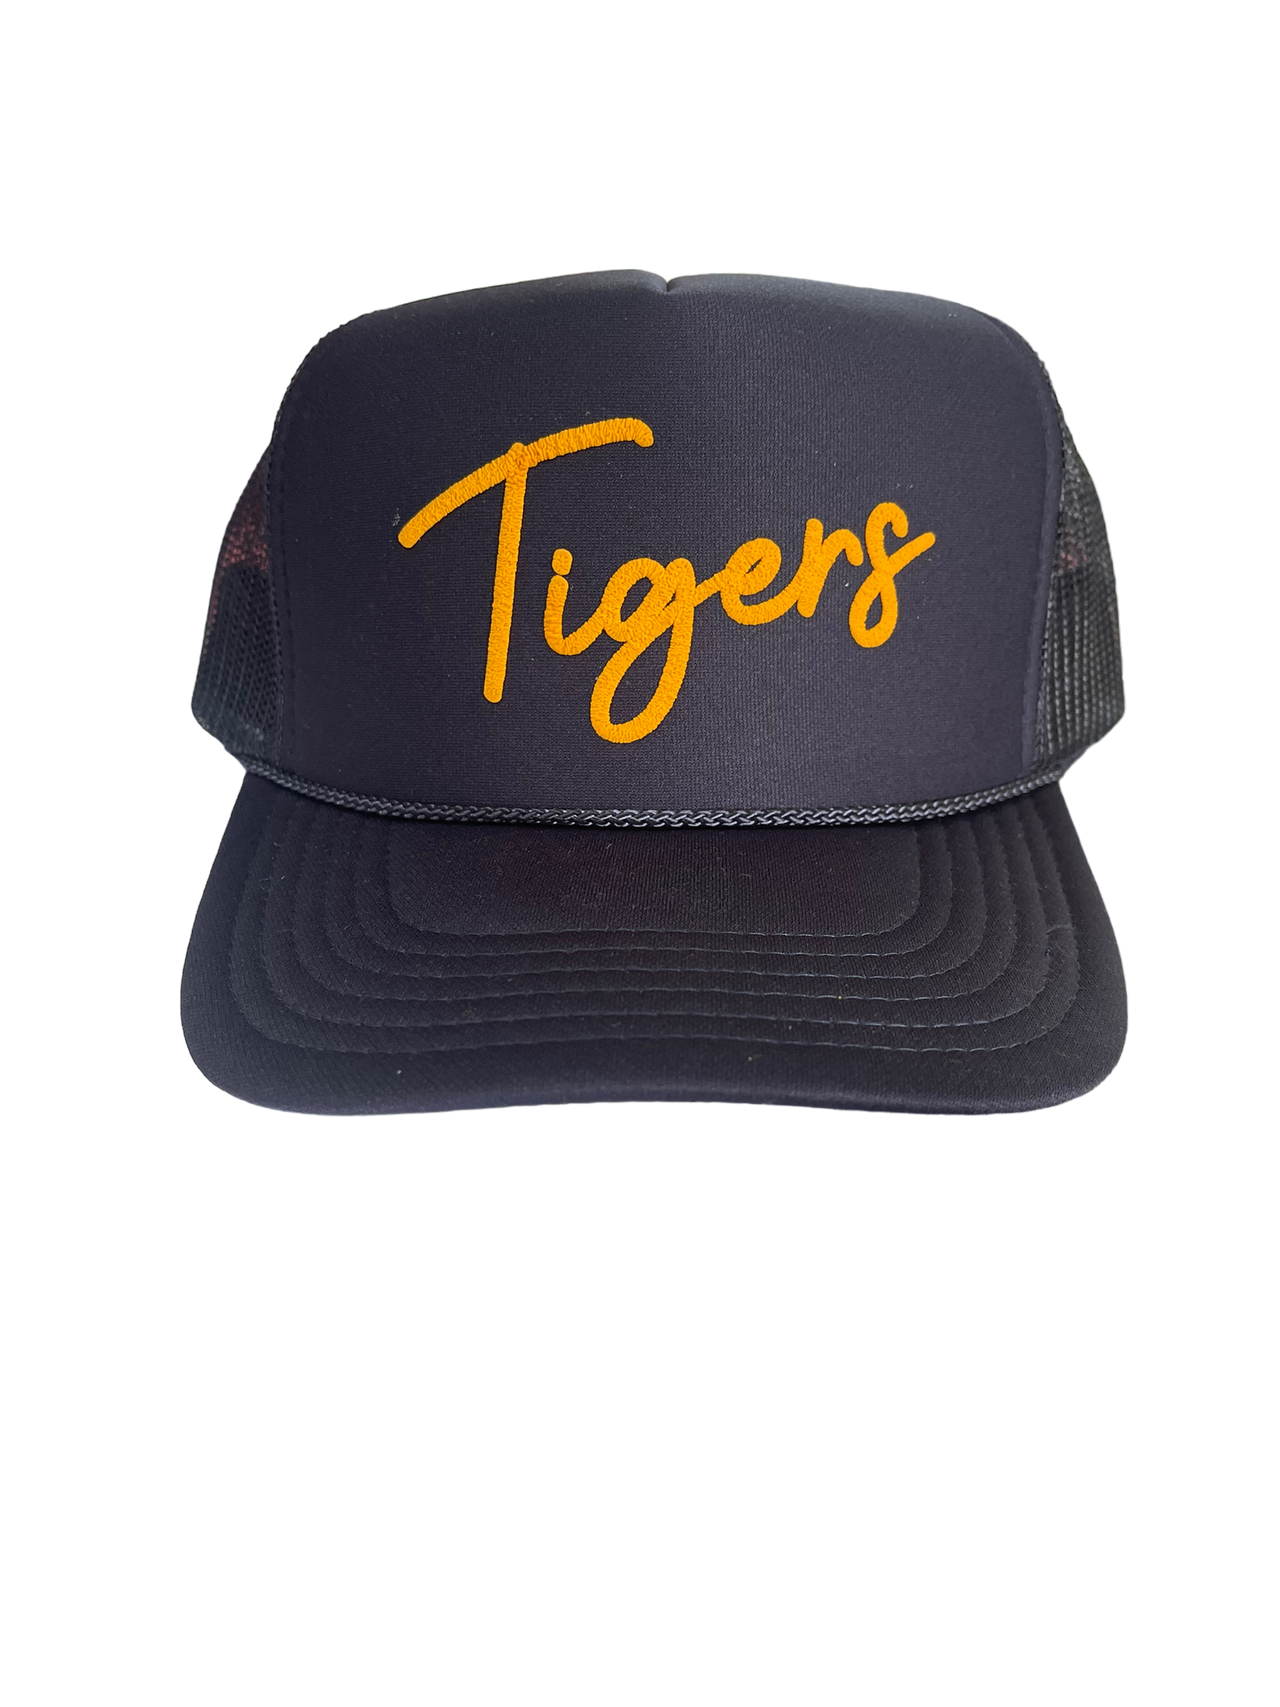 Tigers (Auburn) - Puffy Trucker